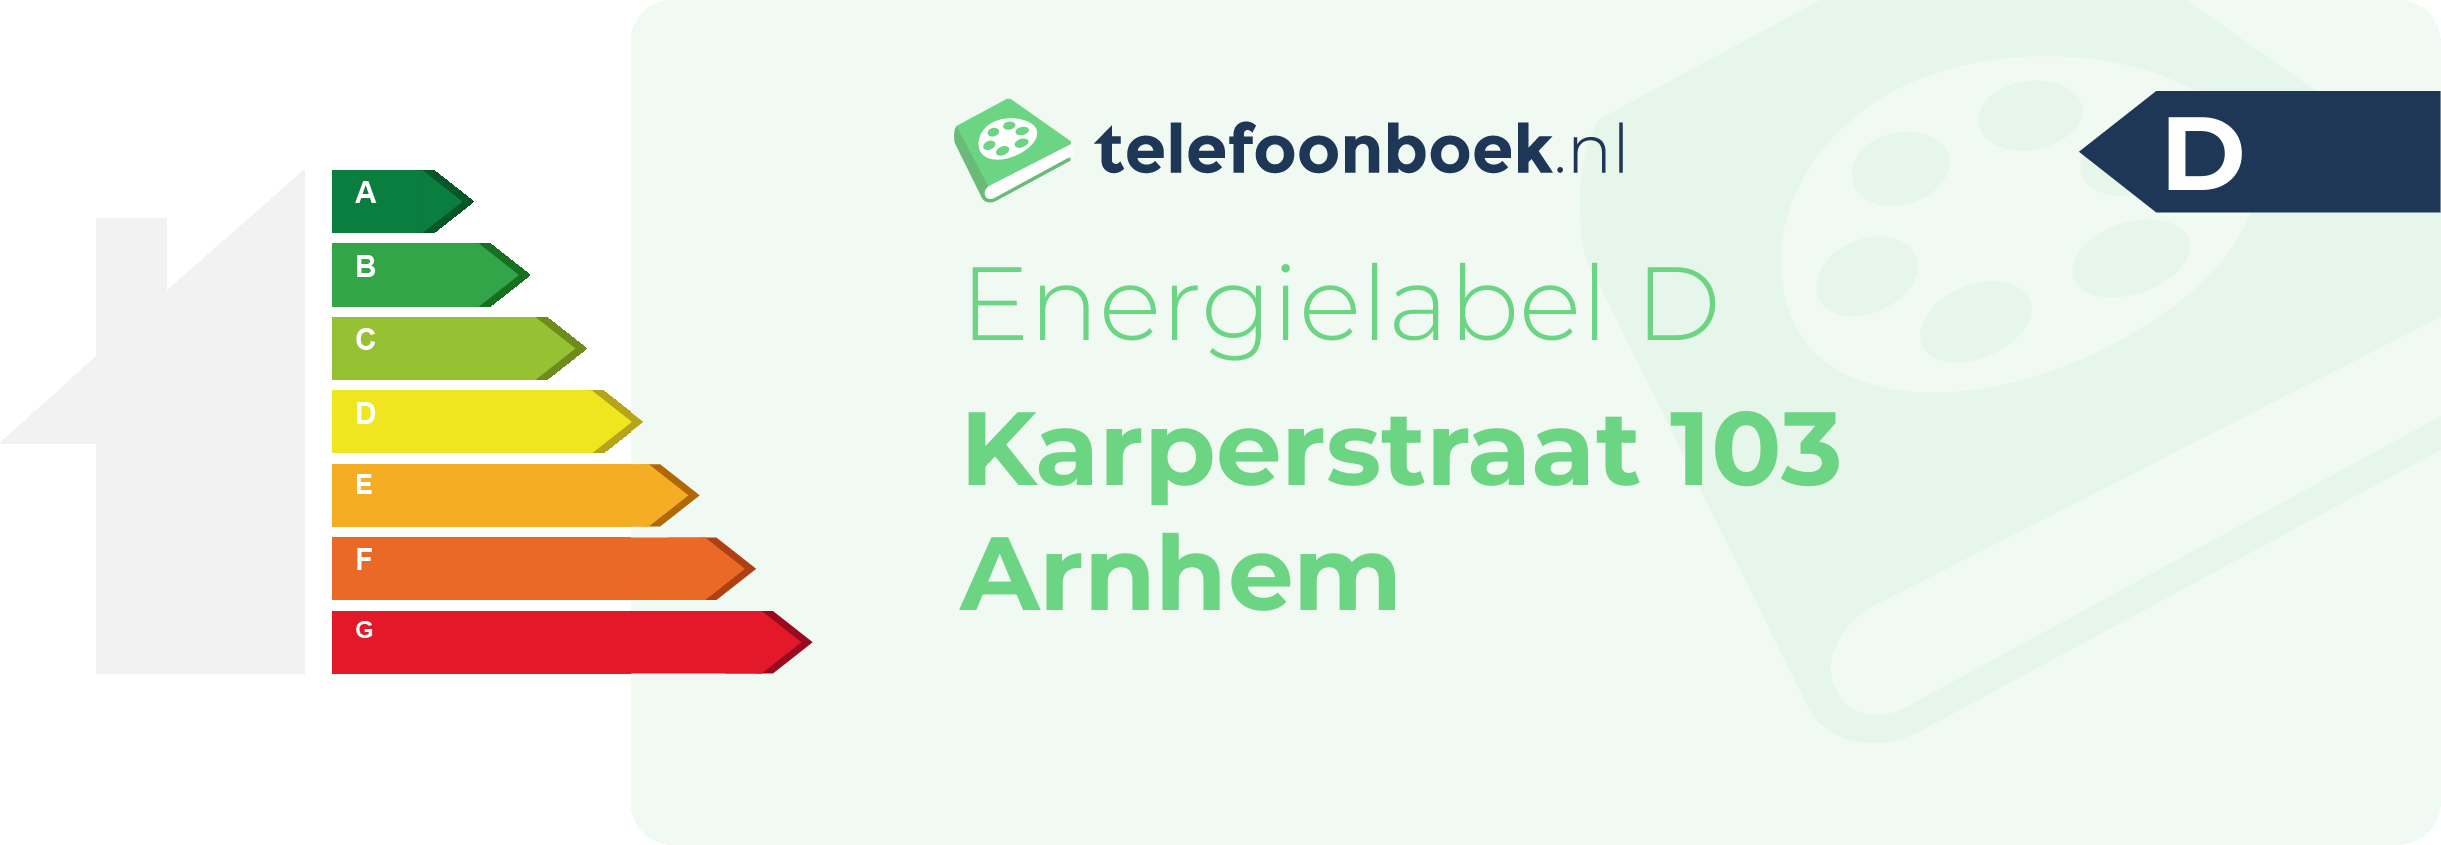 Energielabel Karperstraat 103 Arnhem